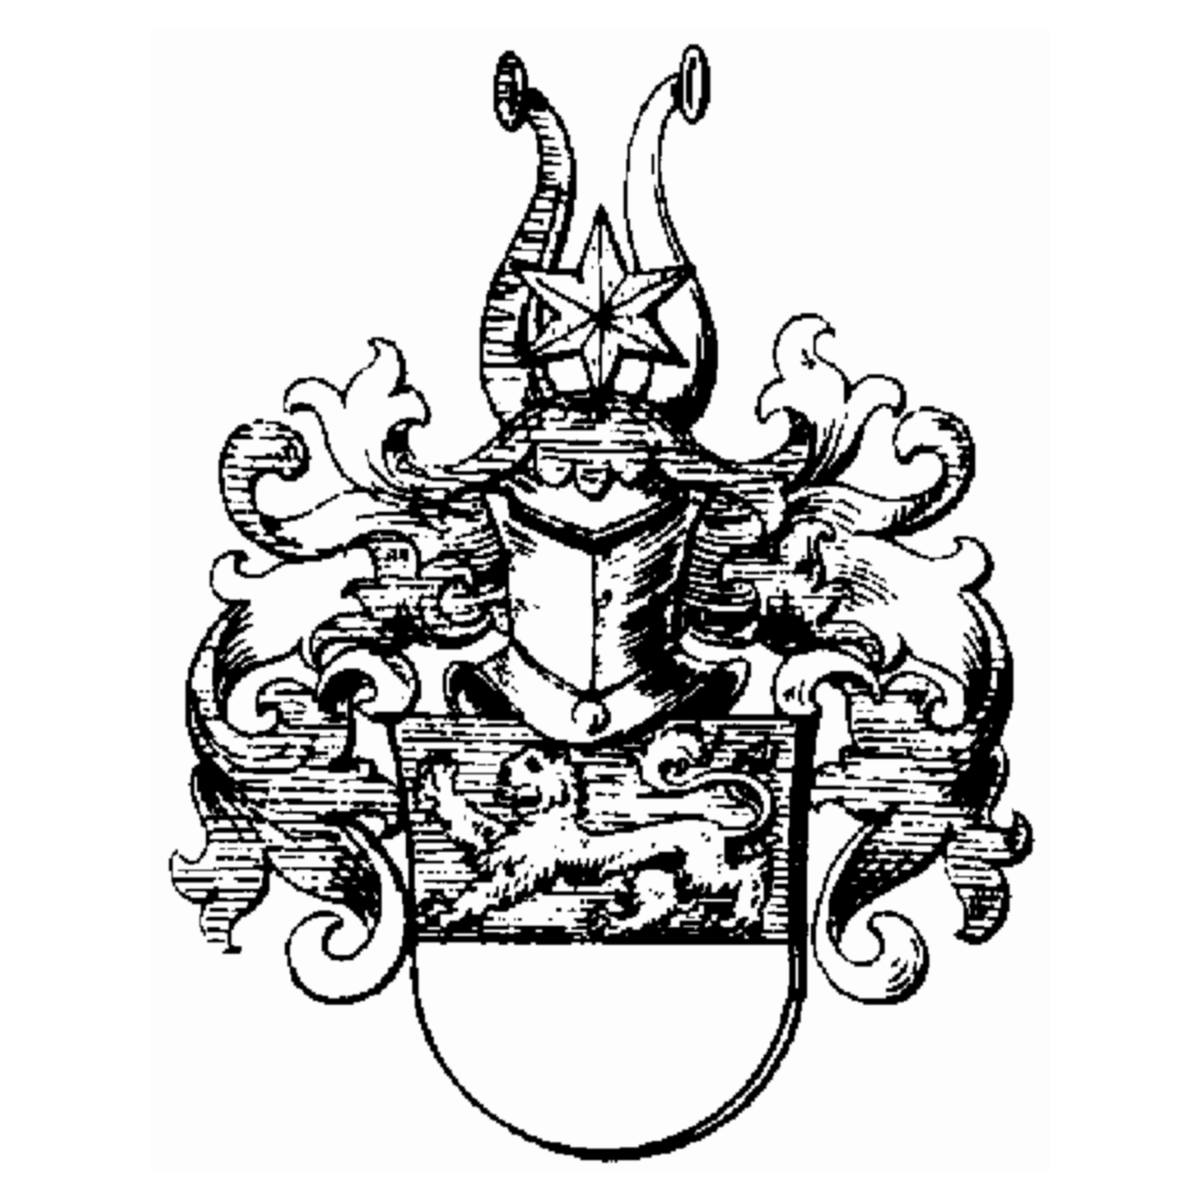 Coat of arms of family Ratfelder